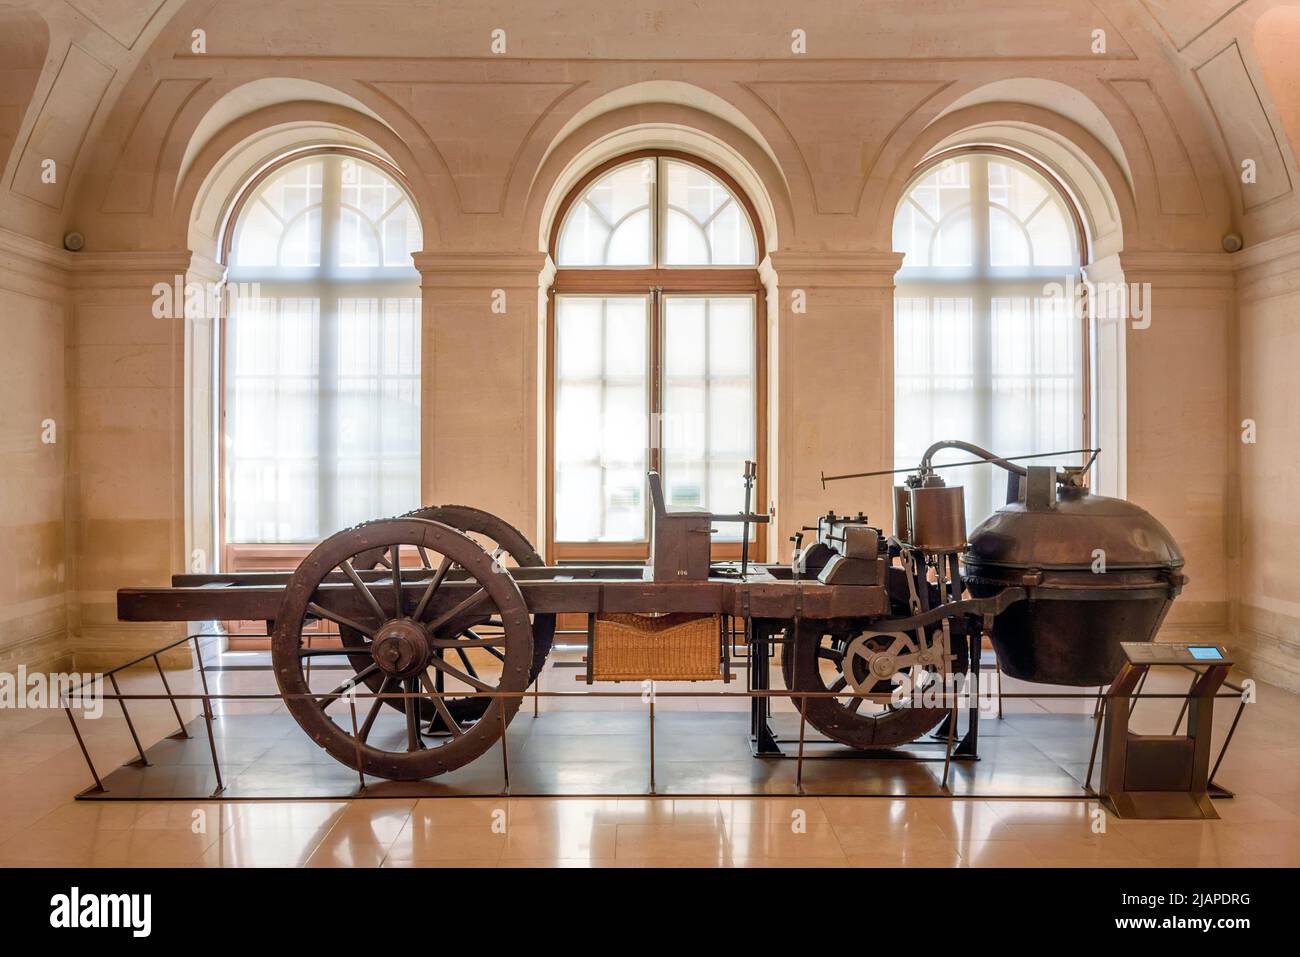 Nicolas-Joseph Cugnot était un inventeur français qui a construit le premier véhicule terrestre mécanique automoteur pleine grandeur au monde, le 'Fardier ˆ vapeur' Ð en fait le premier véhicule automobile au monde. ˆ vapeur de Cugnot en 1770, conservé au MusŽe des Arts et MŽtiers, Paris, France Banque D'Images